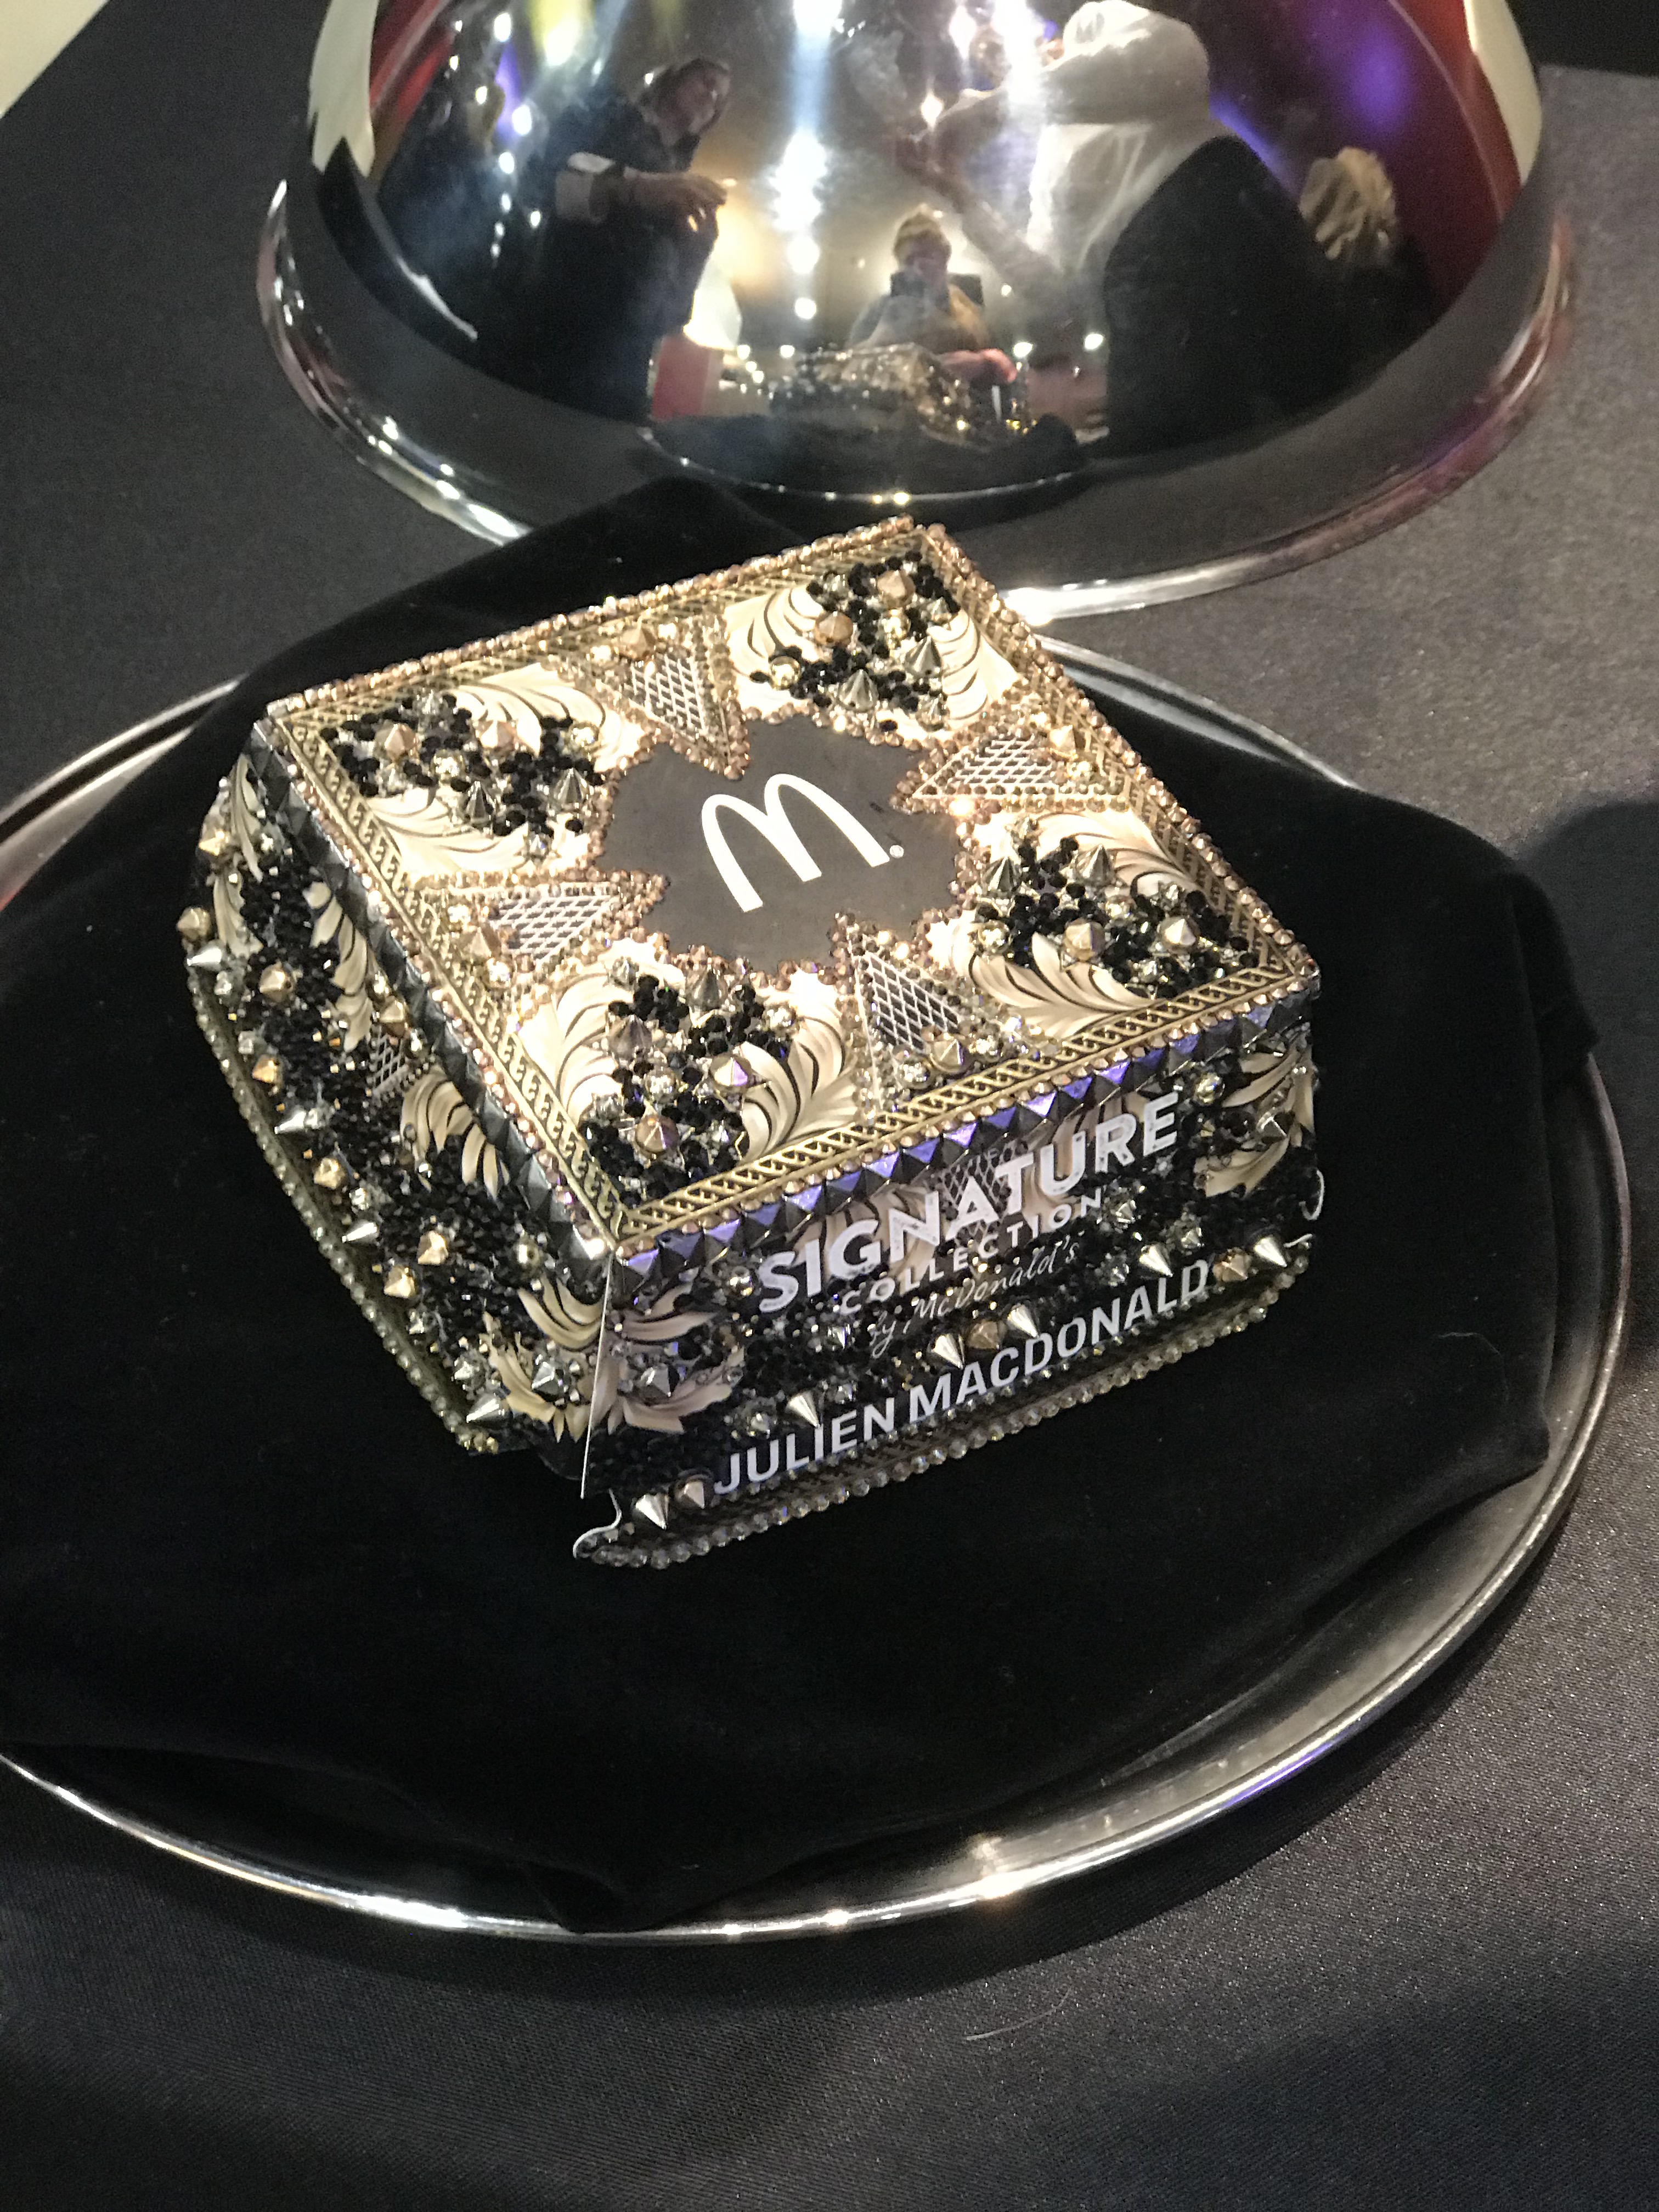 McDonald's Signature Burger Collection in collaboration with Julien Macdonald | Black carpet launch | Elle Blonde Luxury Lifestyle Destination Blog